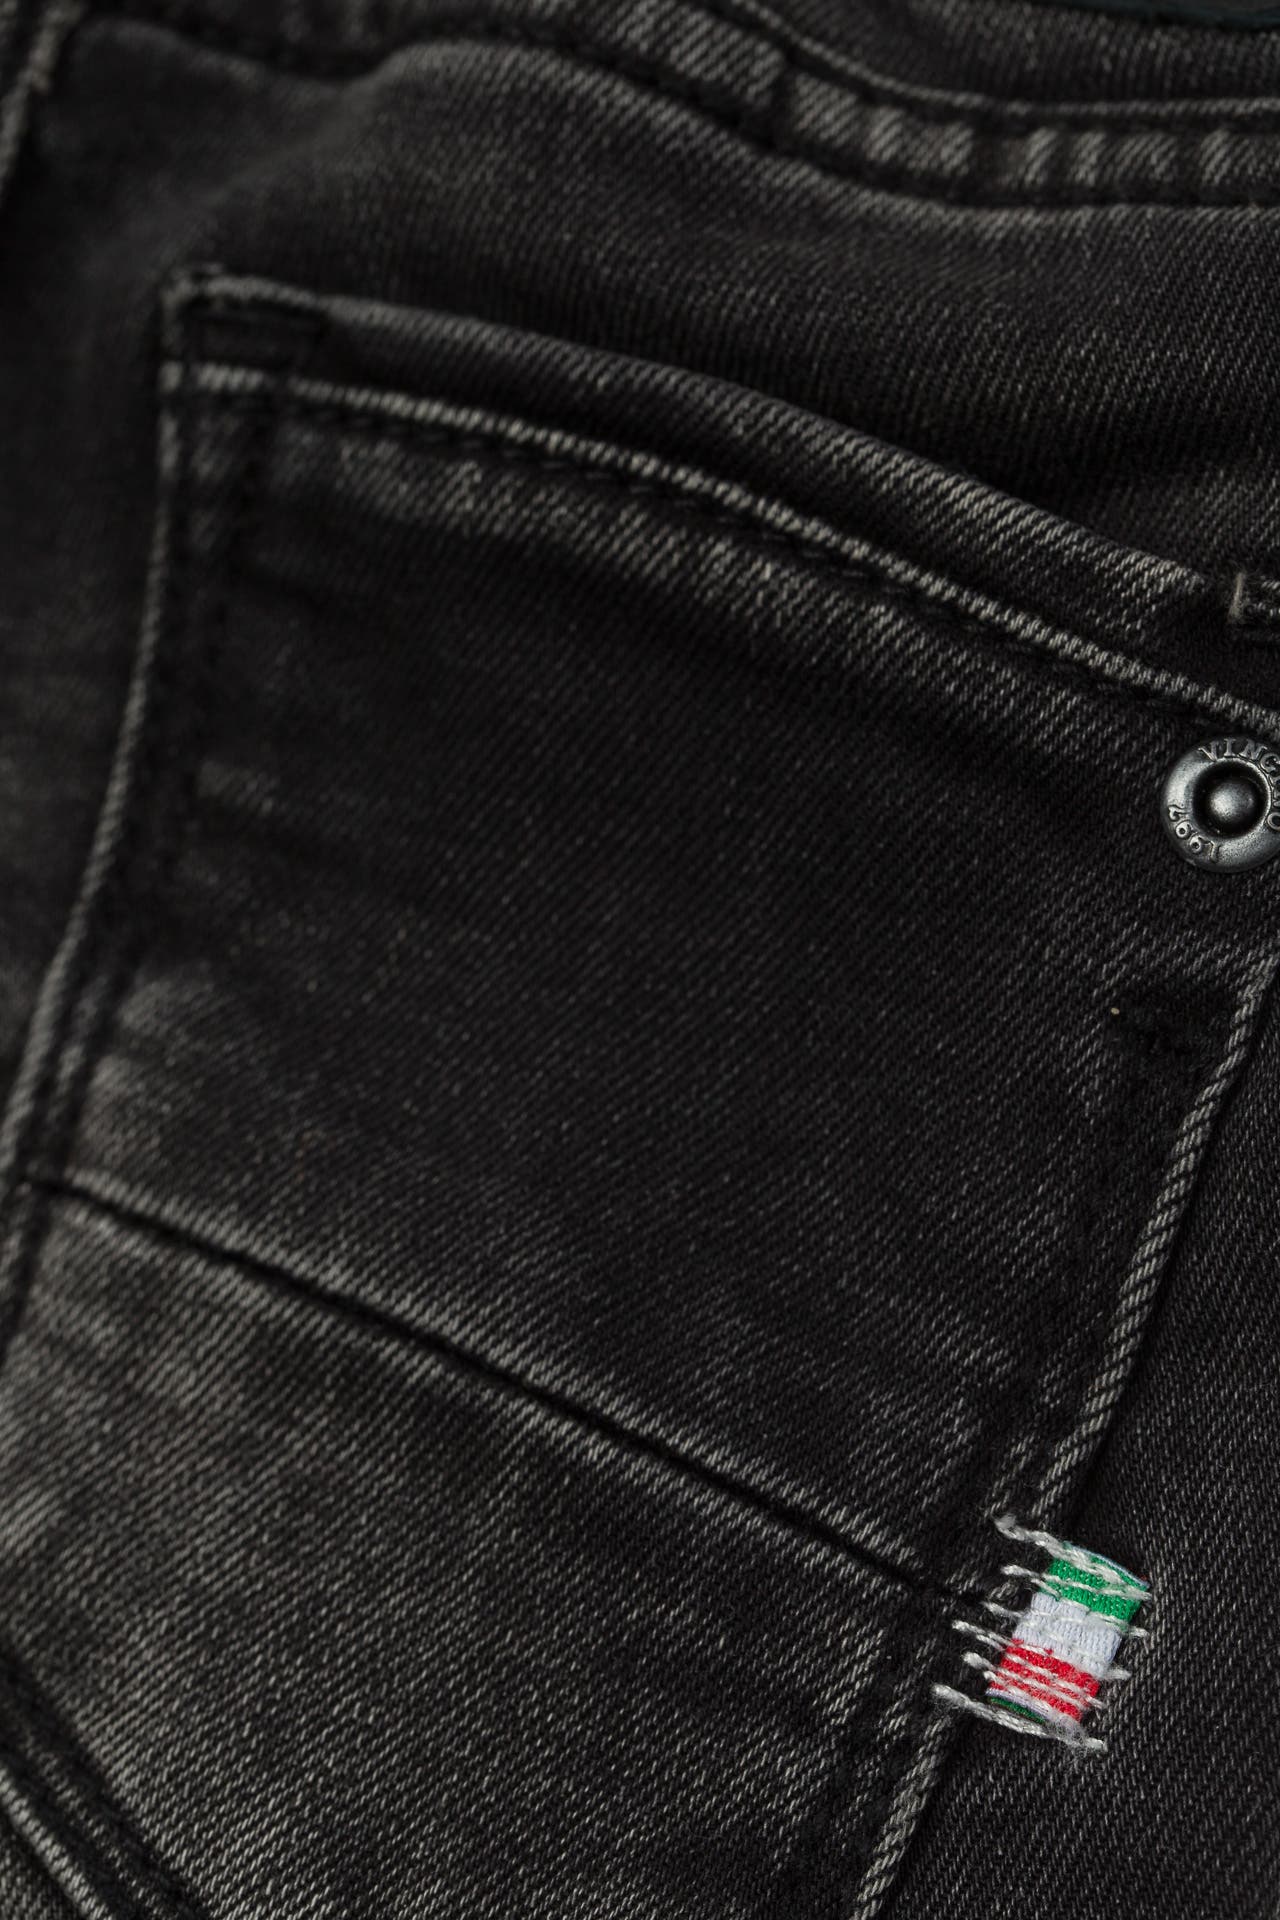 Jeans 'Benson' schwarz VINGINO » günstig online kaufen | OUTLETCITY.COM